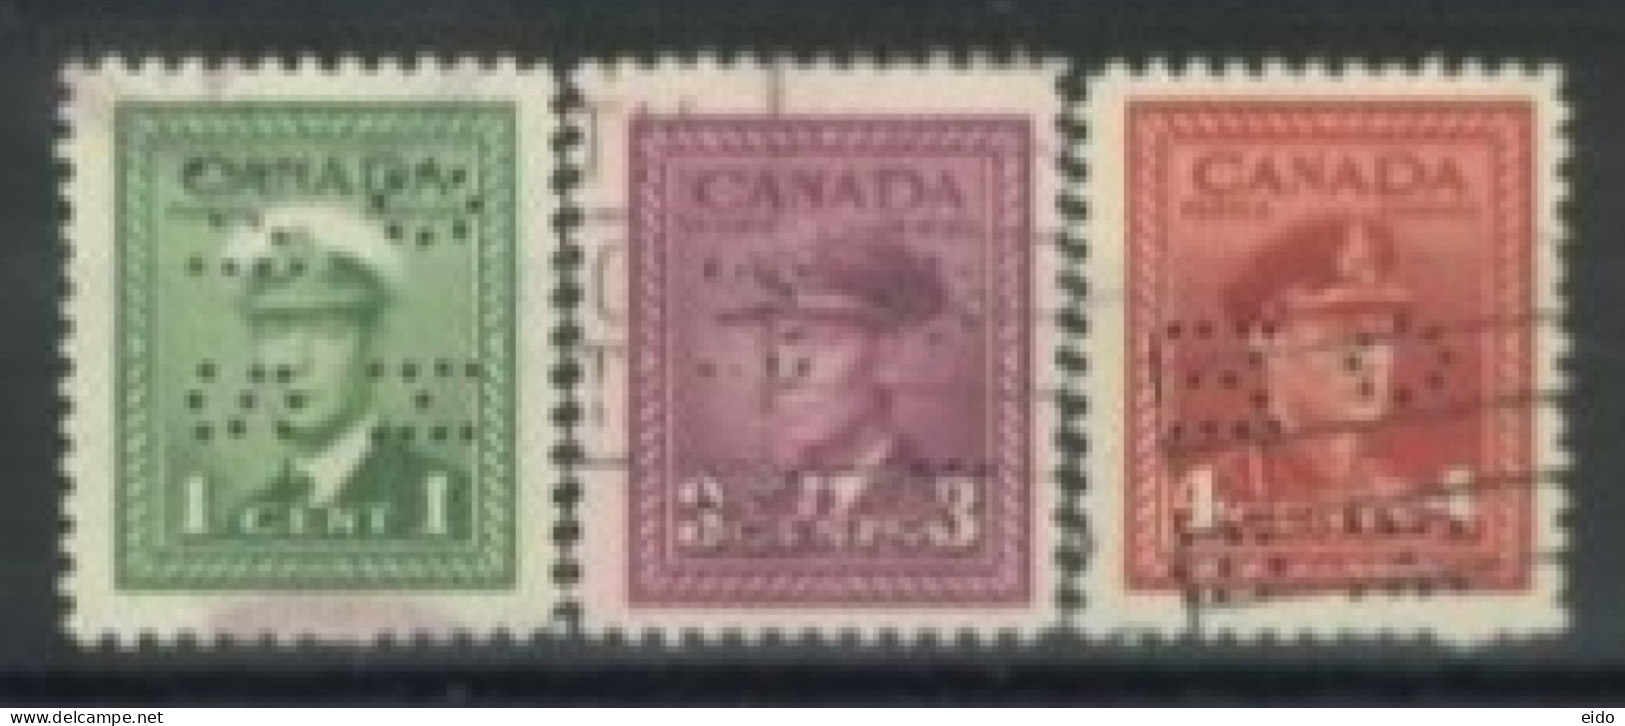 CANADA - 1942, KING GEORGE VI IN NAVAL UNIFORM STAMPS SET OF 3, USED. - Gebruikt